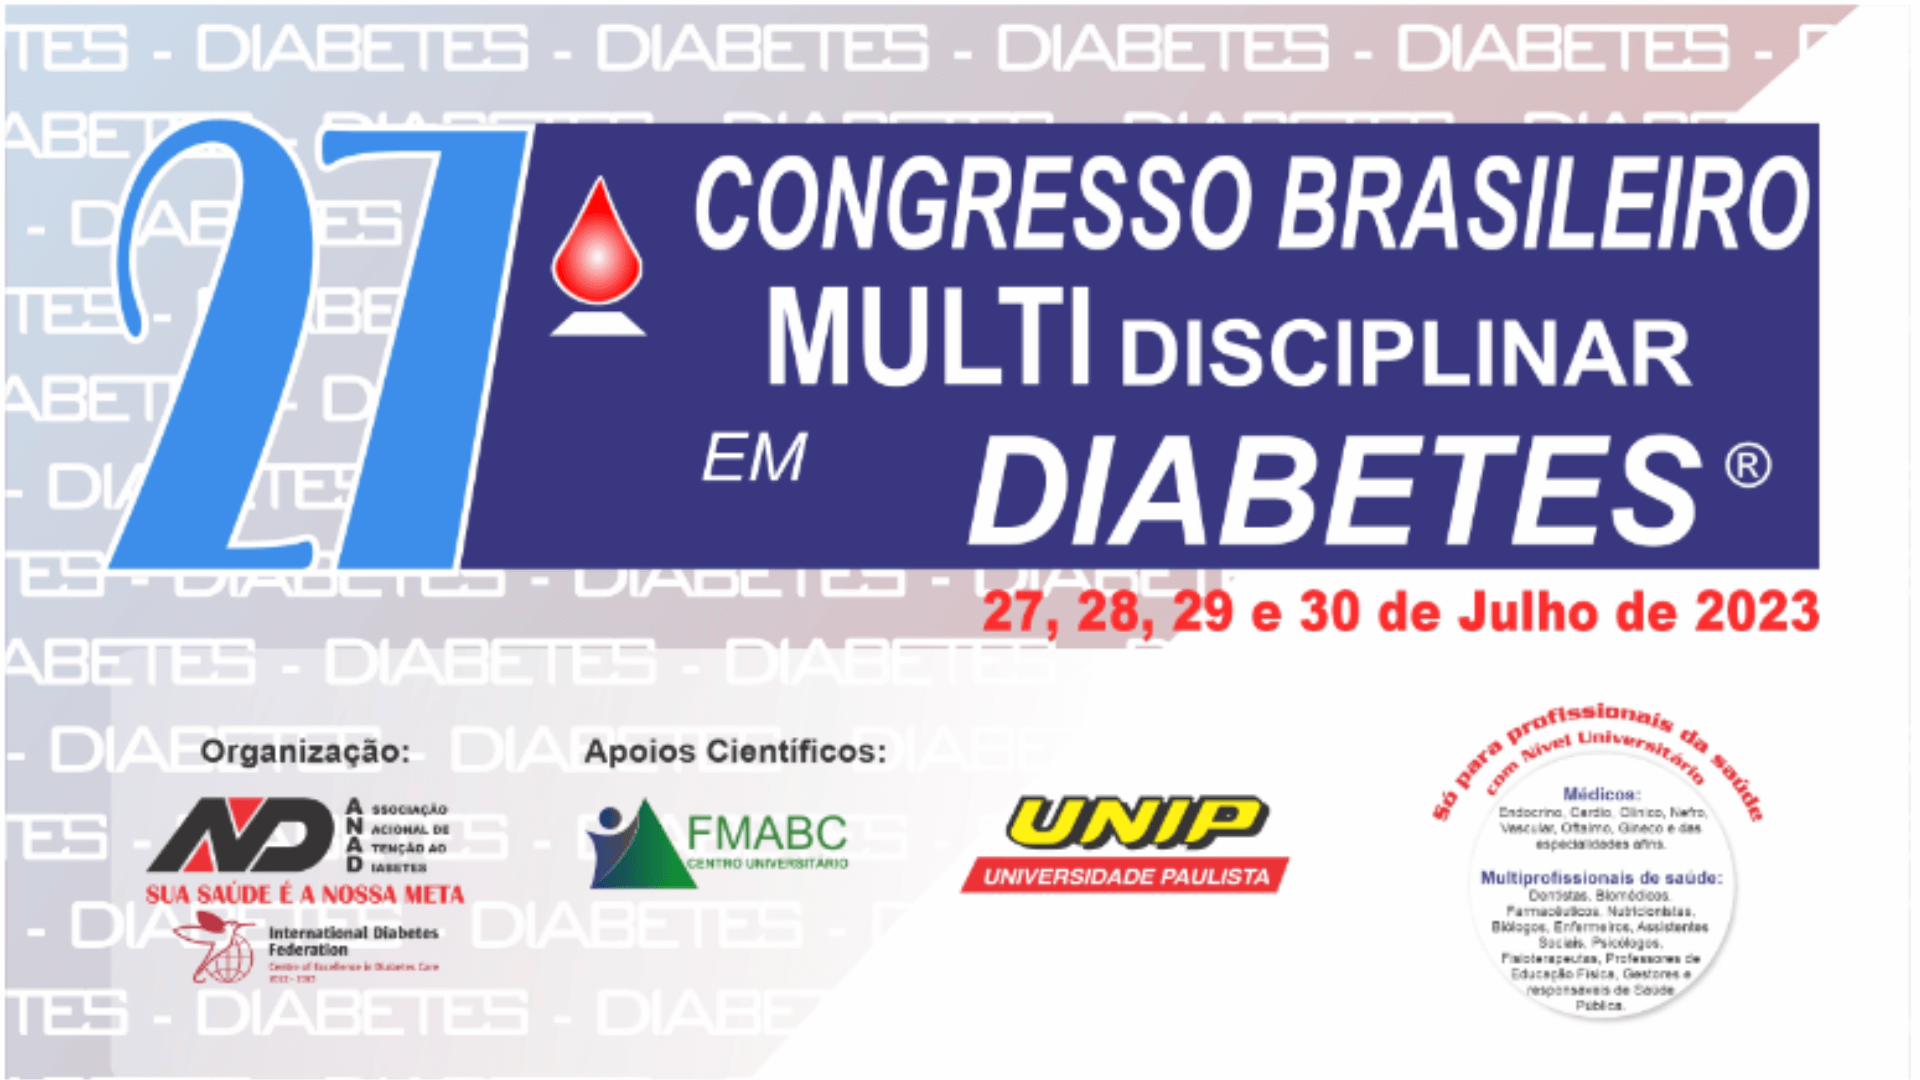 27º Congresso Português de Obesidade